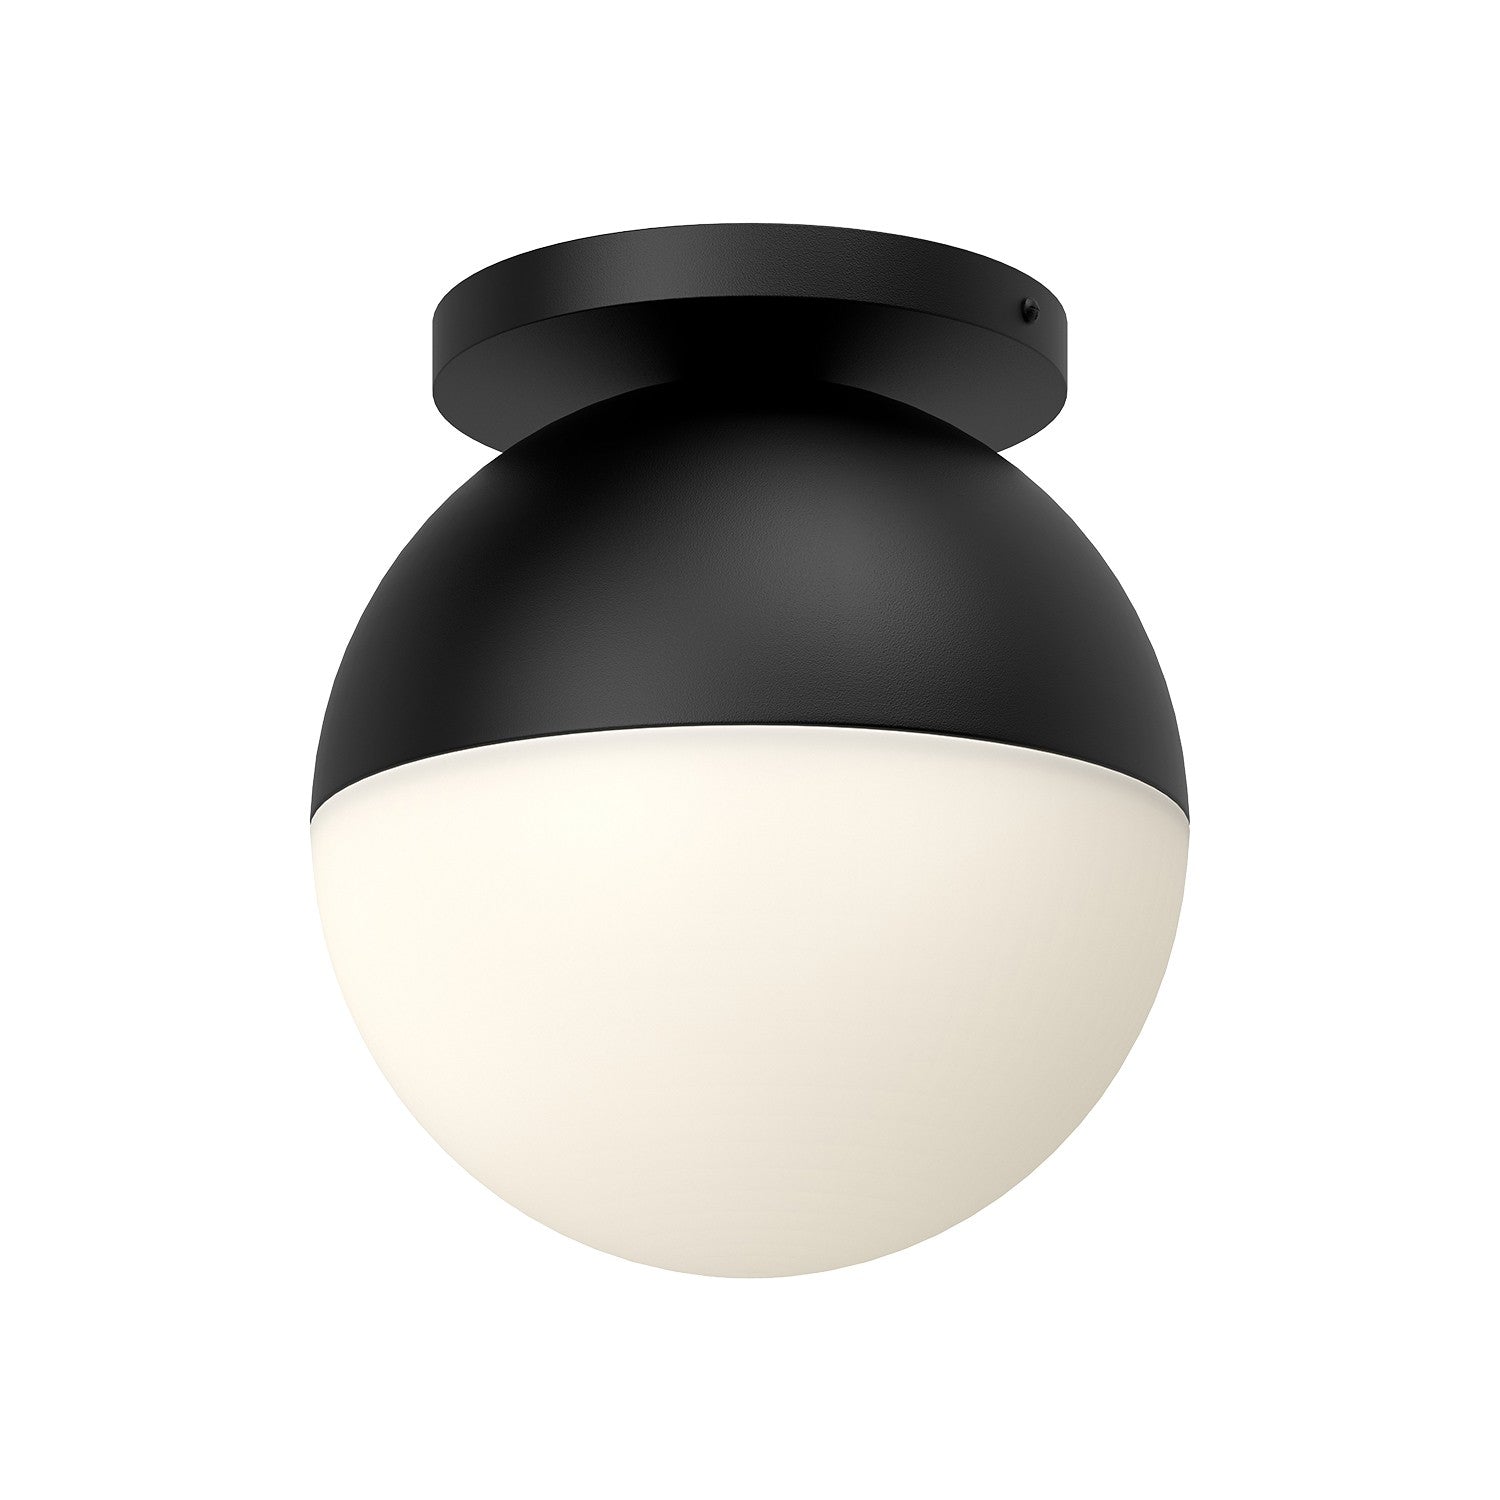 Kuzco Lighting - FM58310-BK/OP - One Light Flush Mount - Monae - Black/Opal Glass